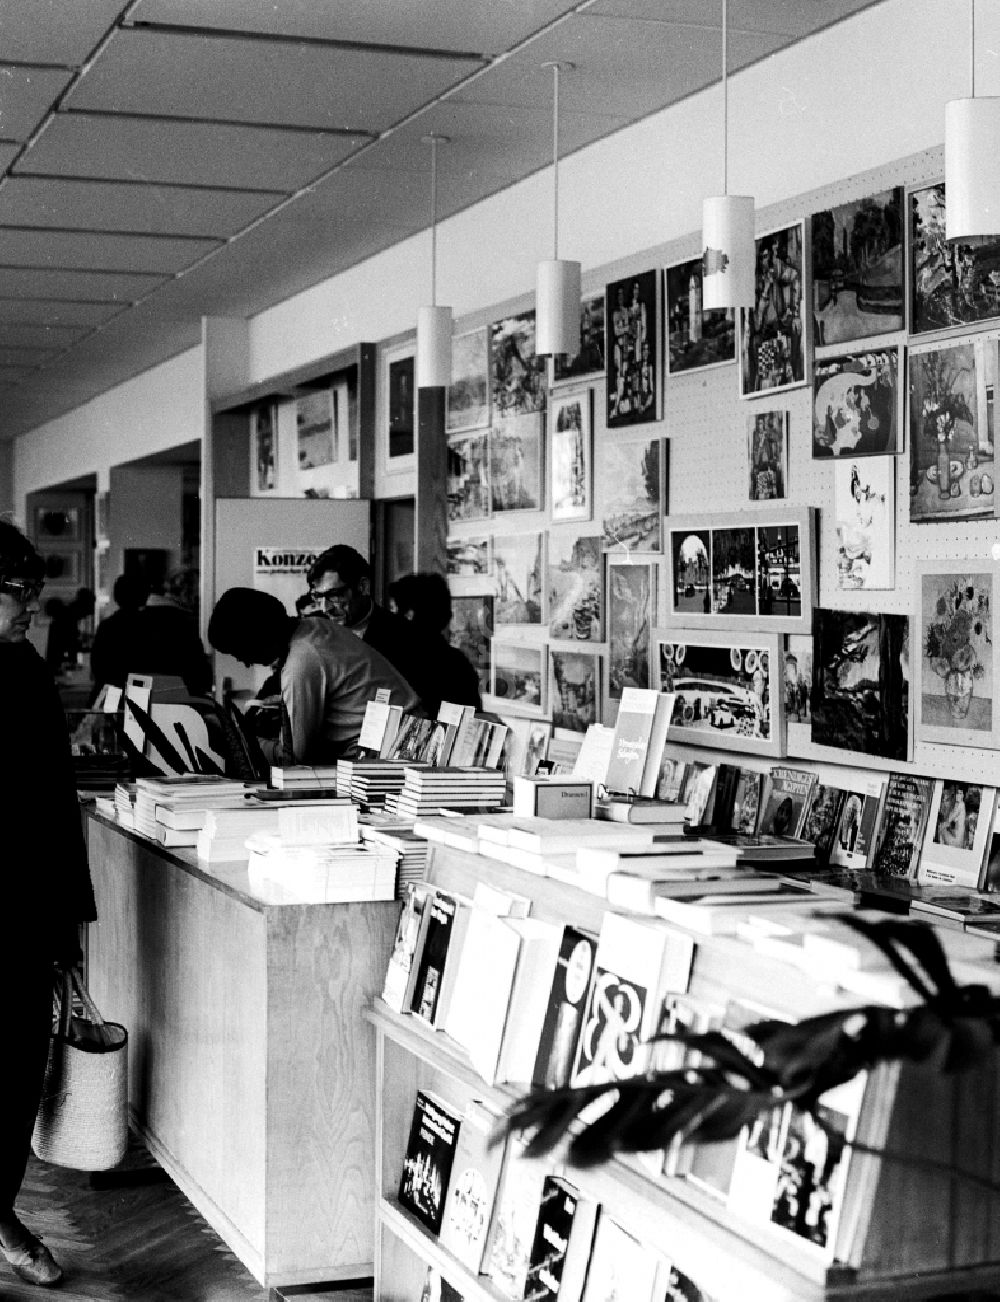 Berlin: Buchladen in Berlin, der ehemaligen Hauptstadt der DDR, Deutsche Demokratische Republik